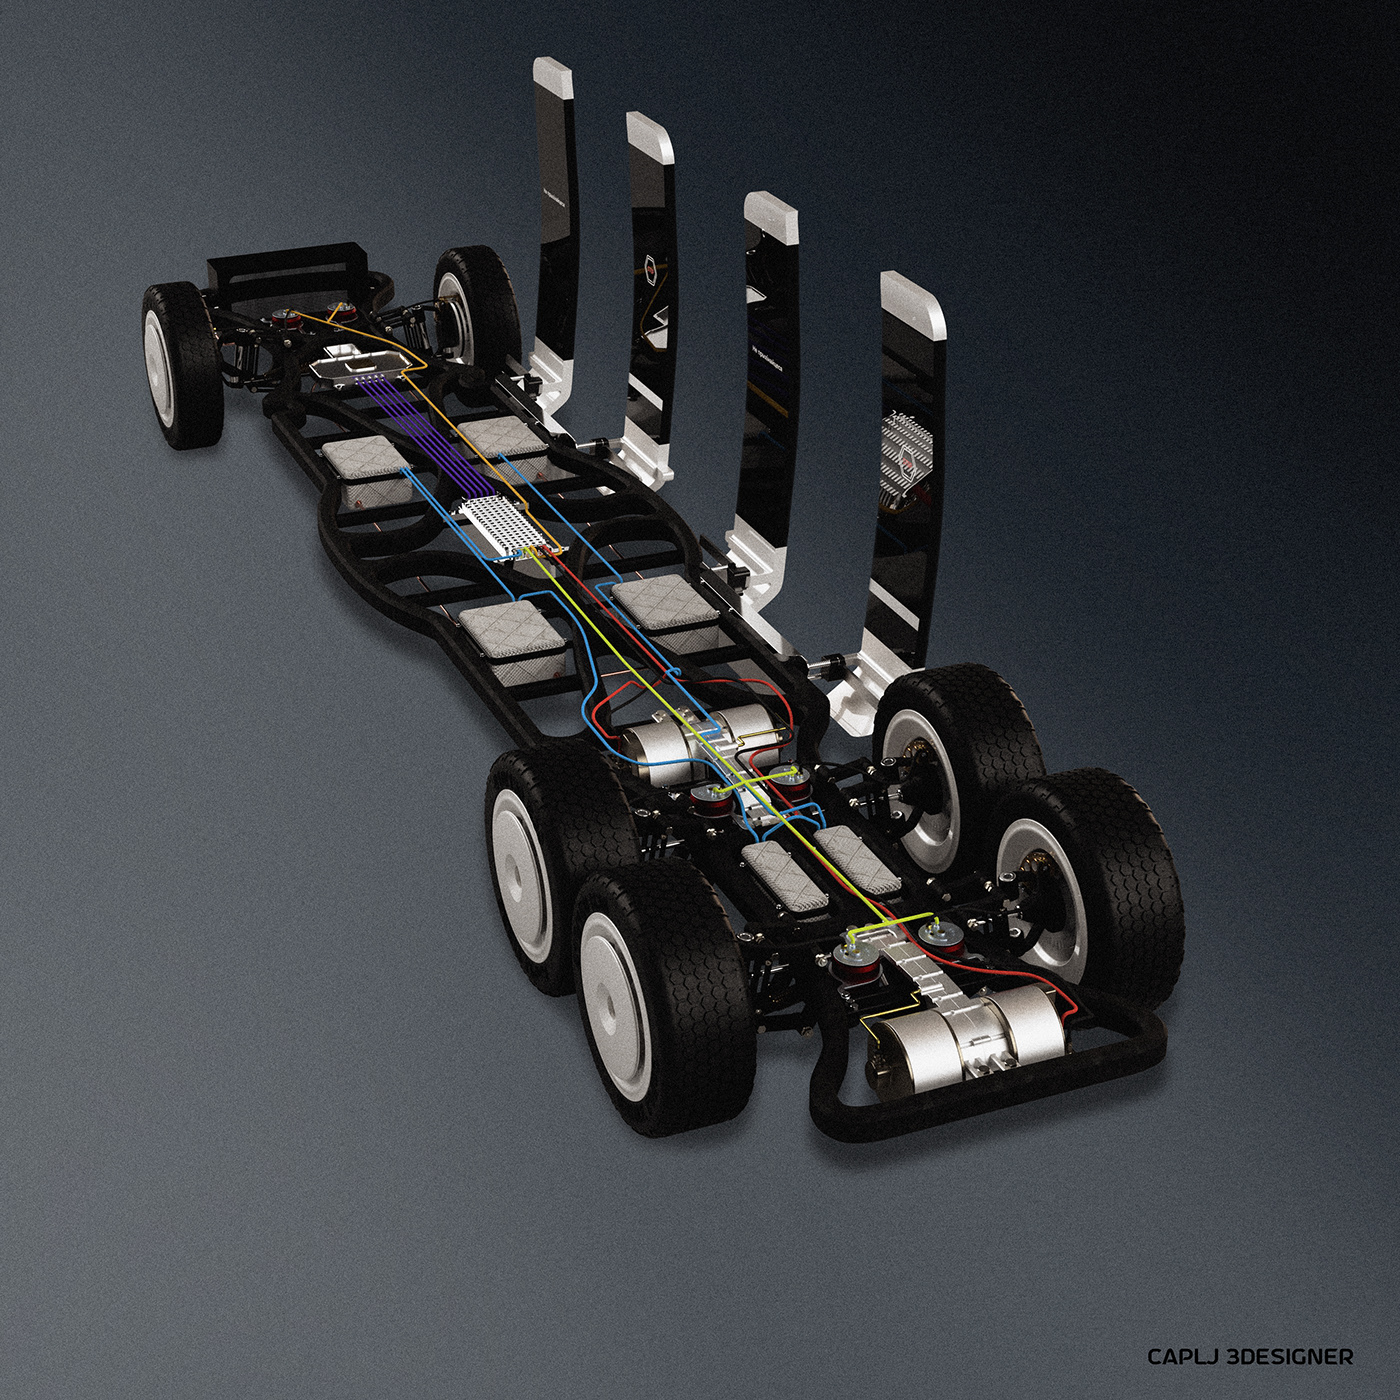 3D Auto Autodesk automotive   concept design electro fusion 360 Render visualization